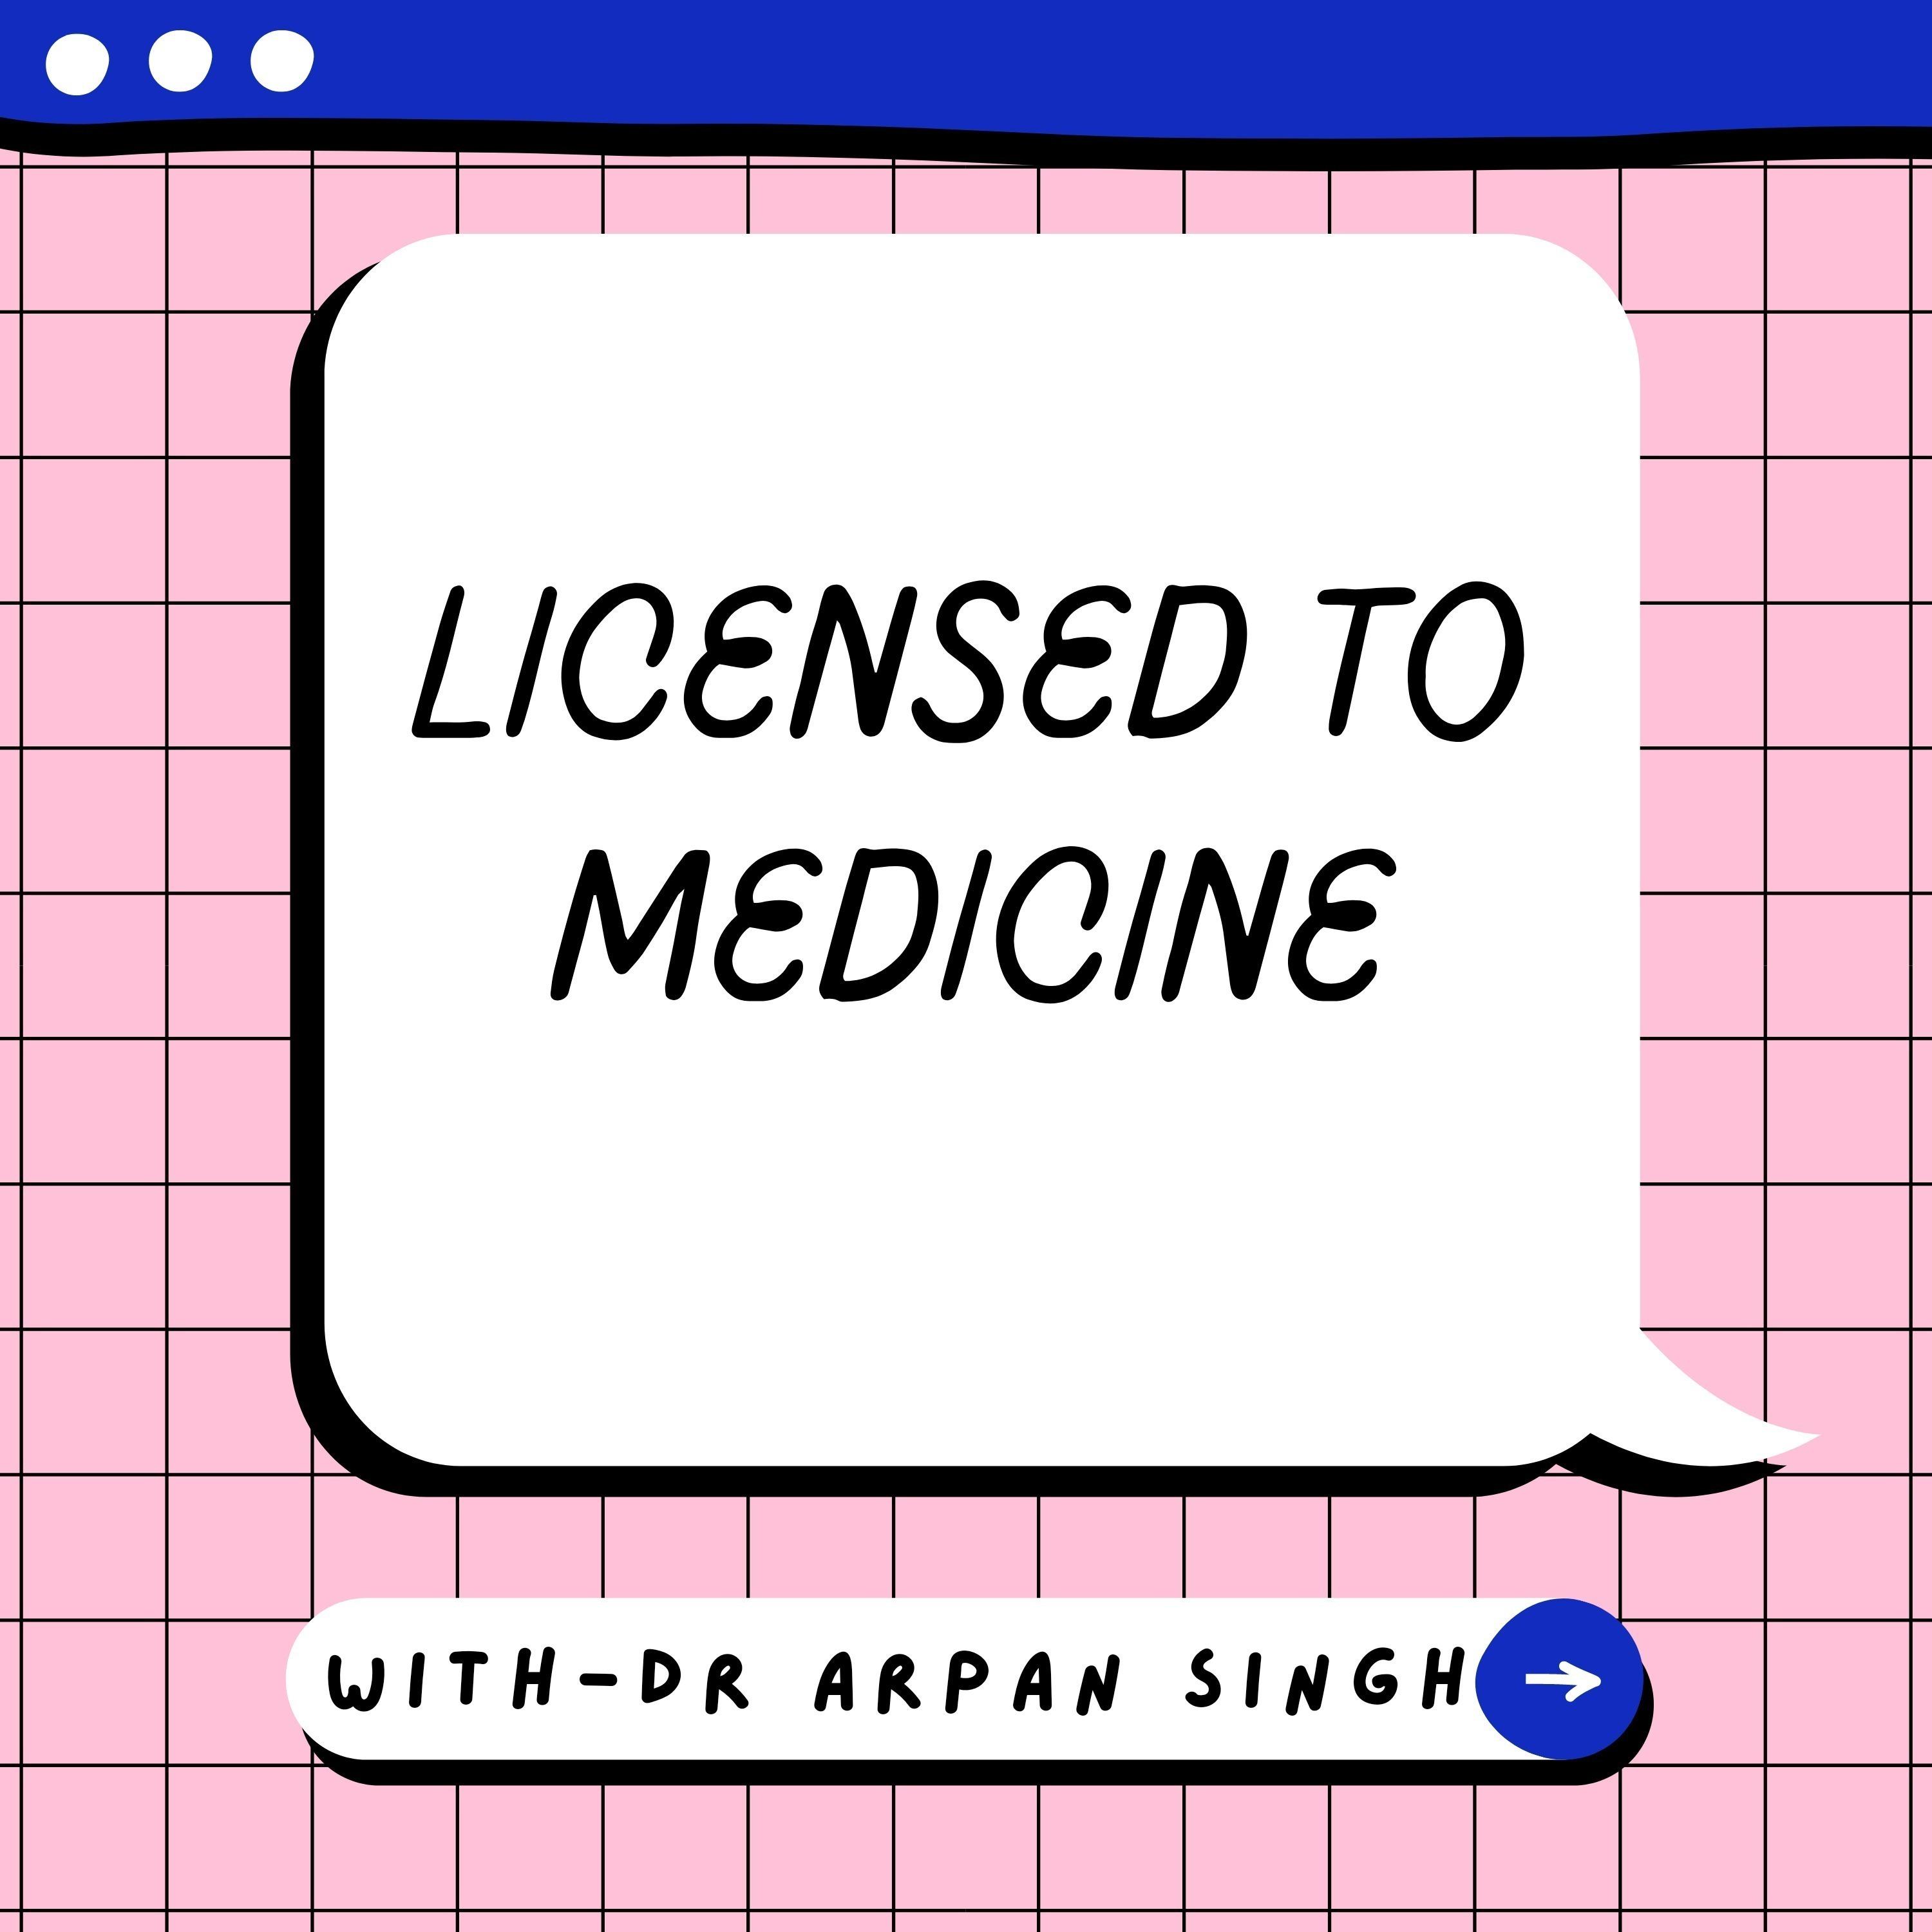 Licensed to medicine.